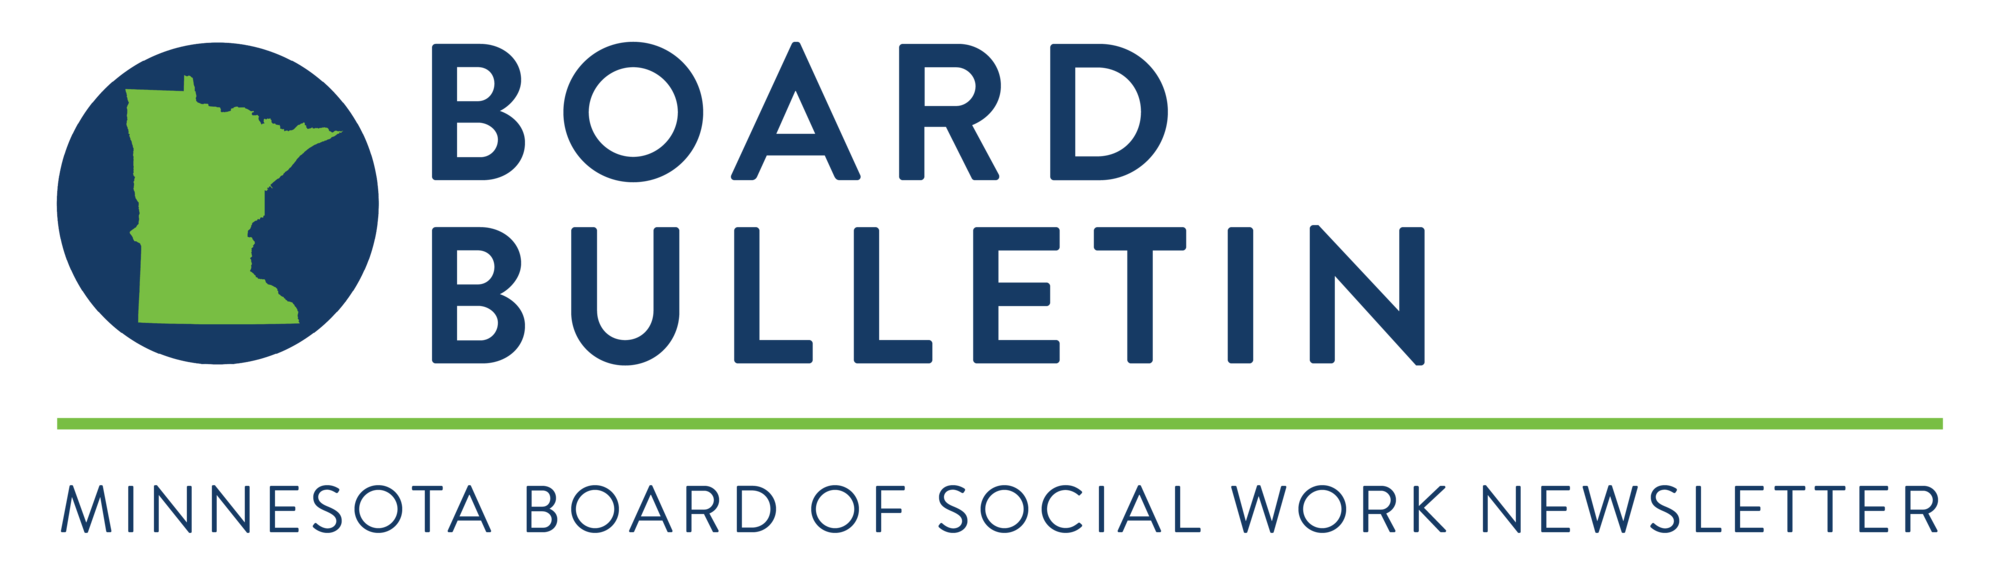 Board Bulletin | Minnesota Board of Social Work Newsletter